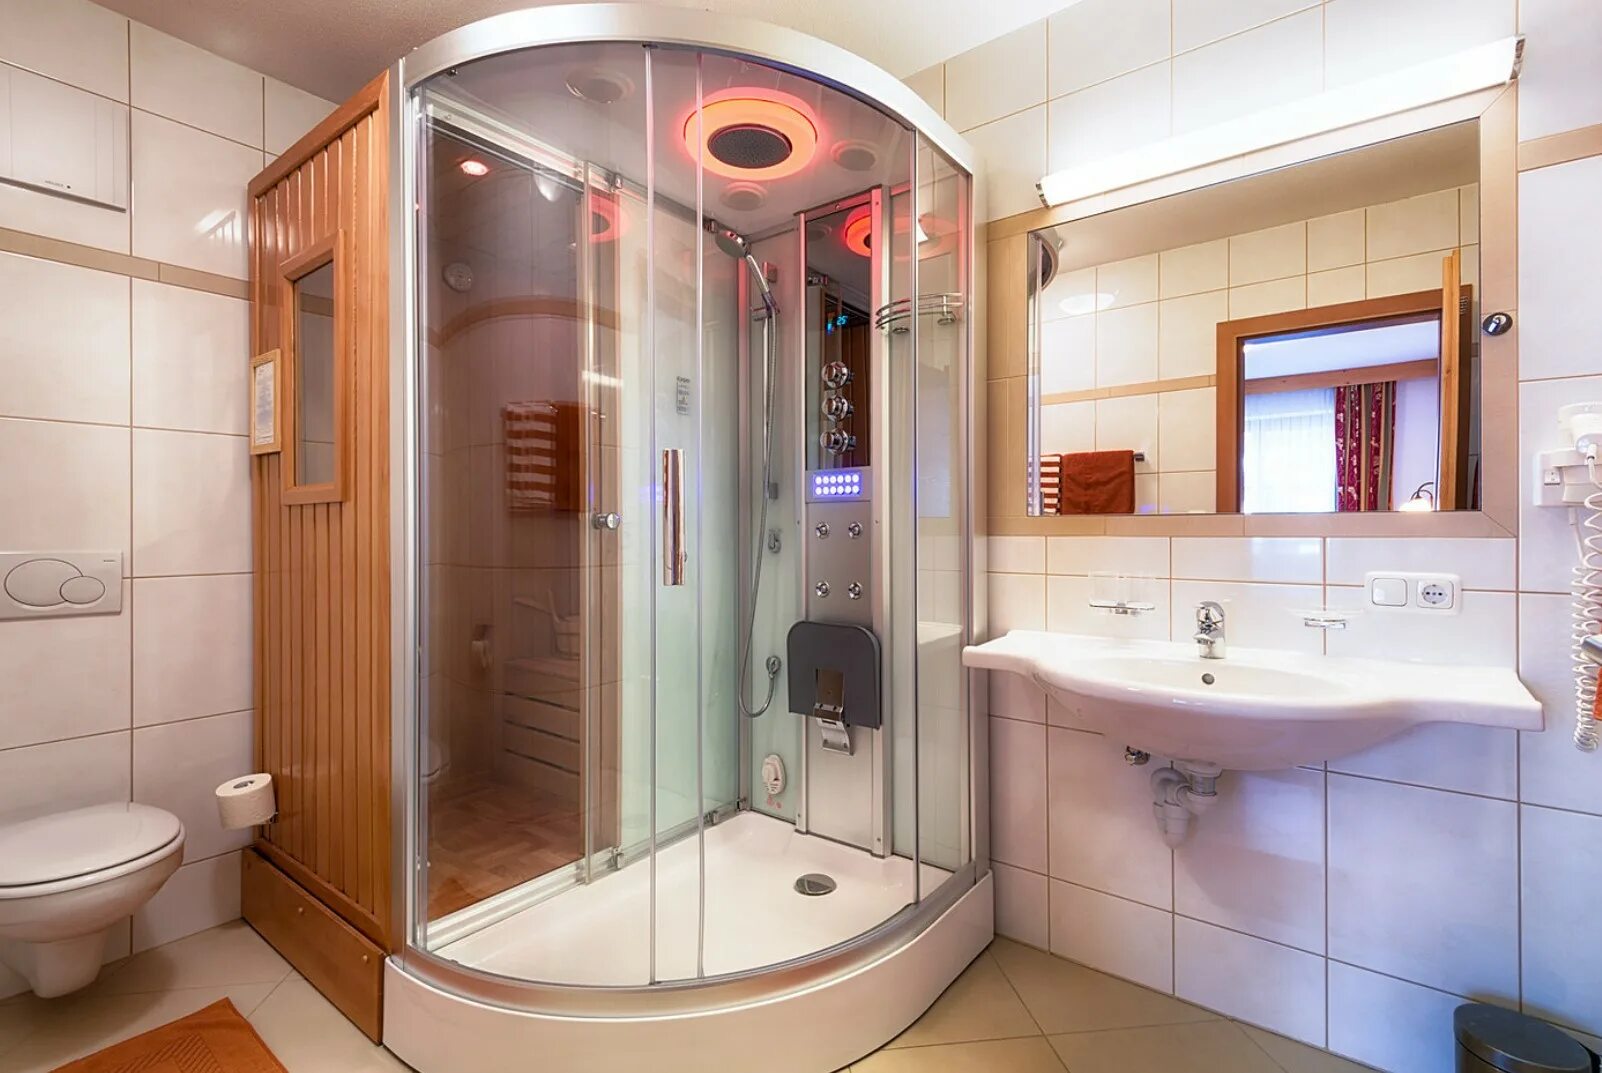 Ванна 2x2 с душевой кабинкой. Маленькая ванная с душевой кабиной. Malenkaia vannaia komnata s dushevoi kabinoi. Ванная комната с душевой кабинкой.